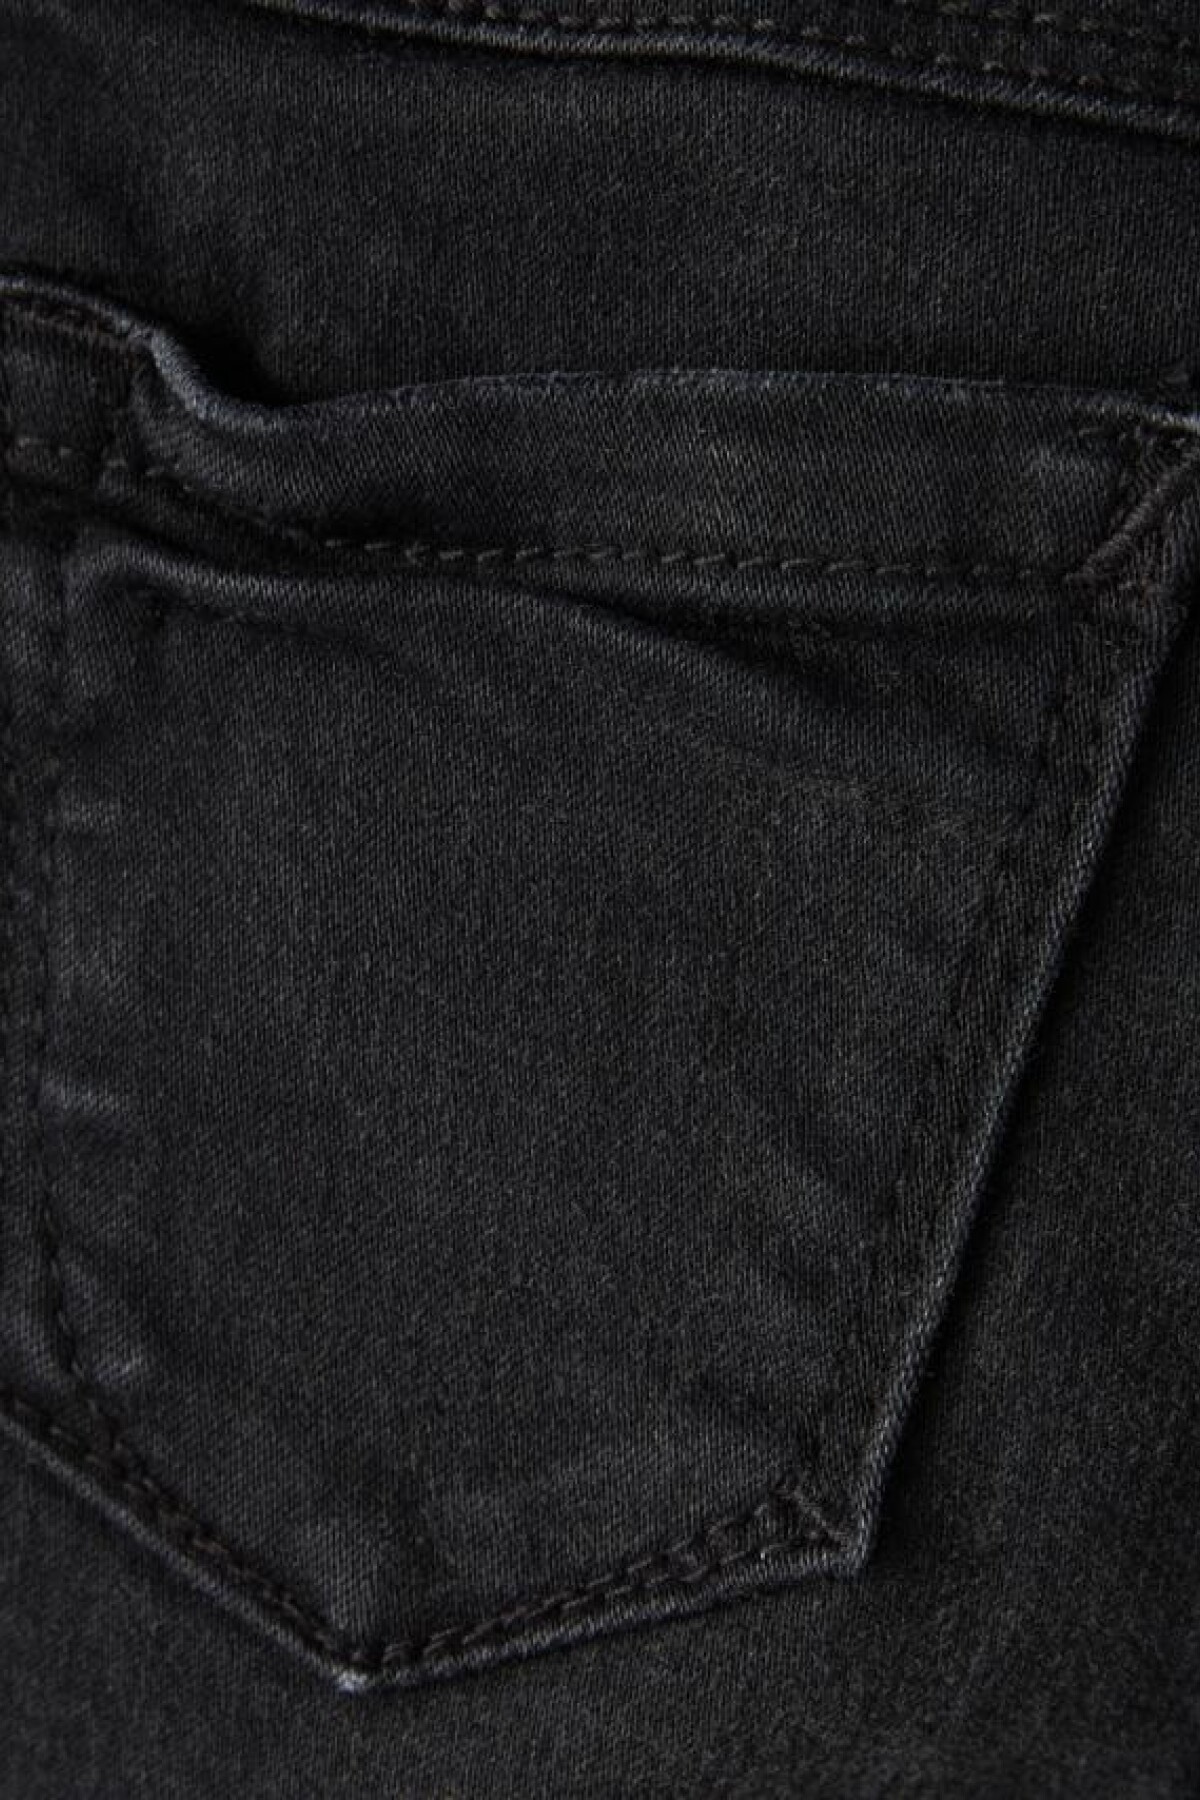 Jeans Skinny Black Denim